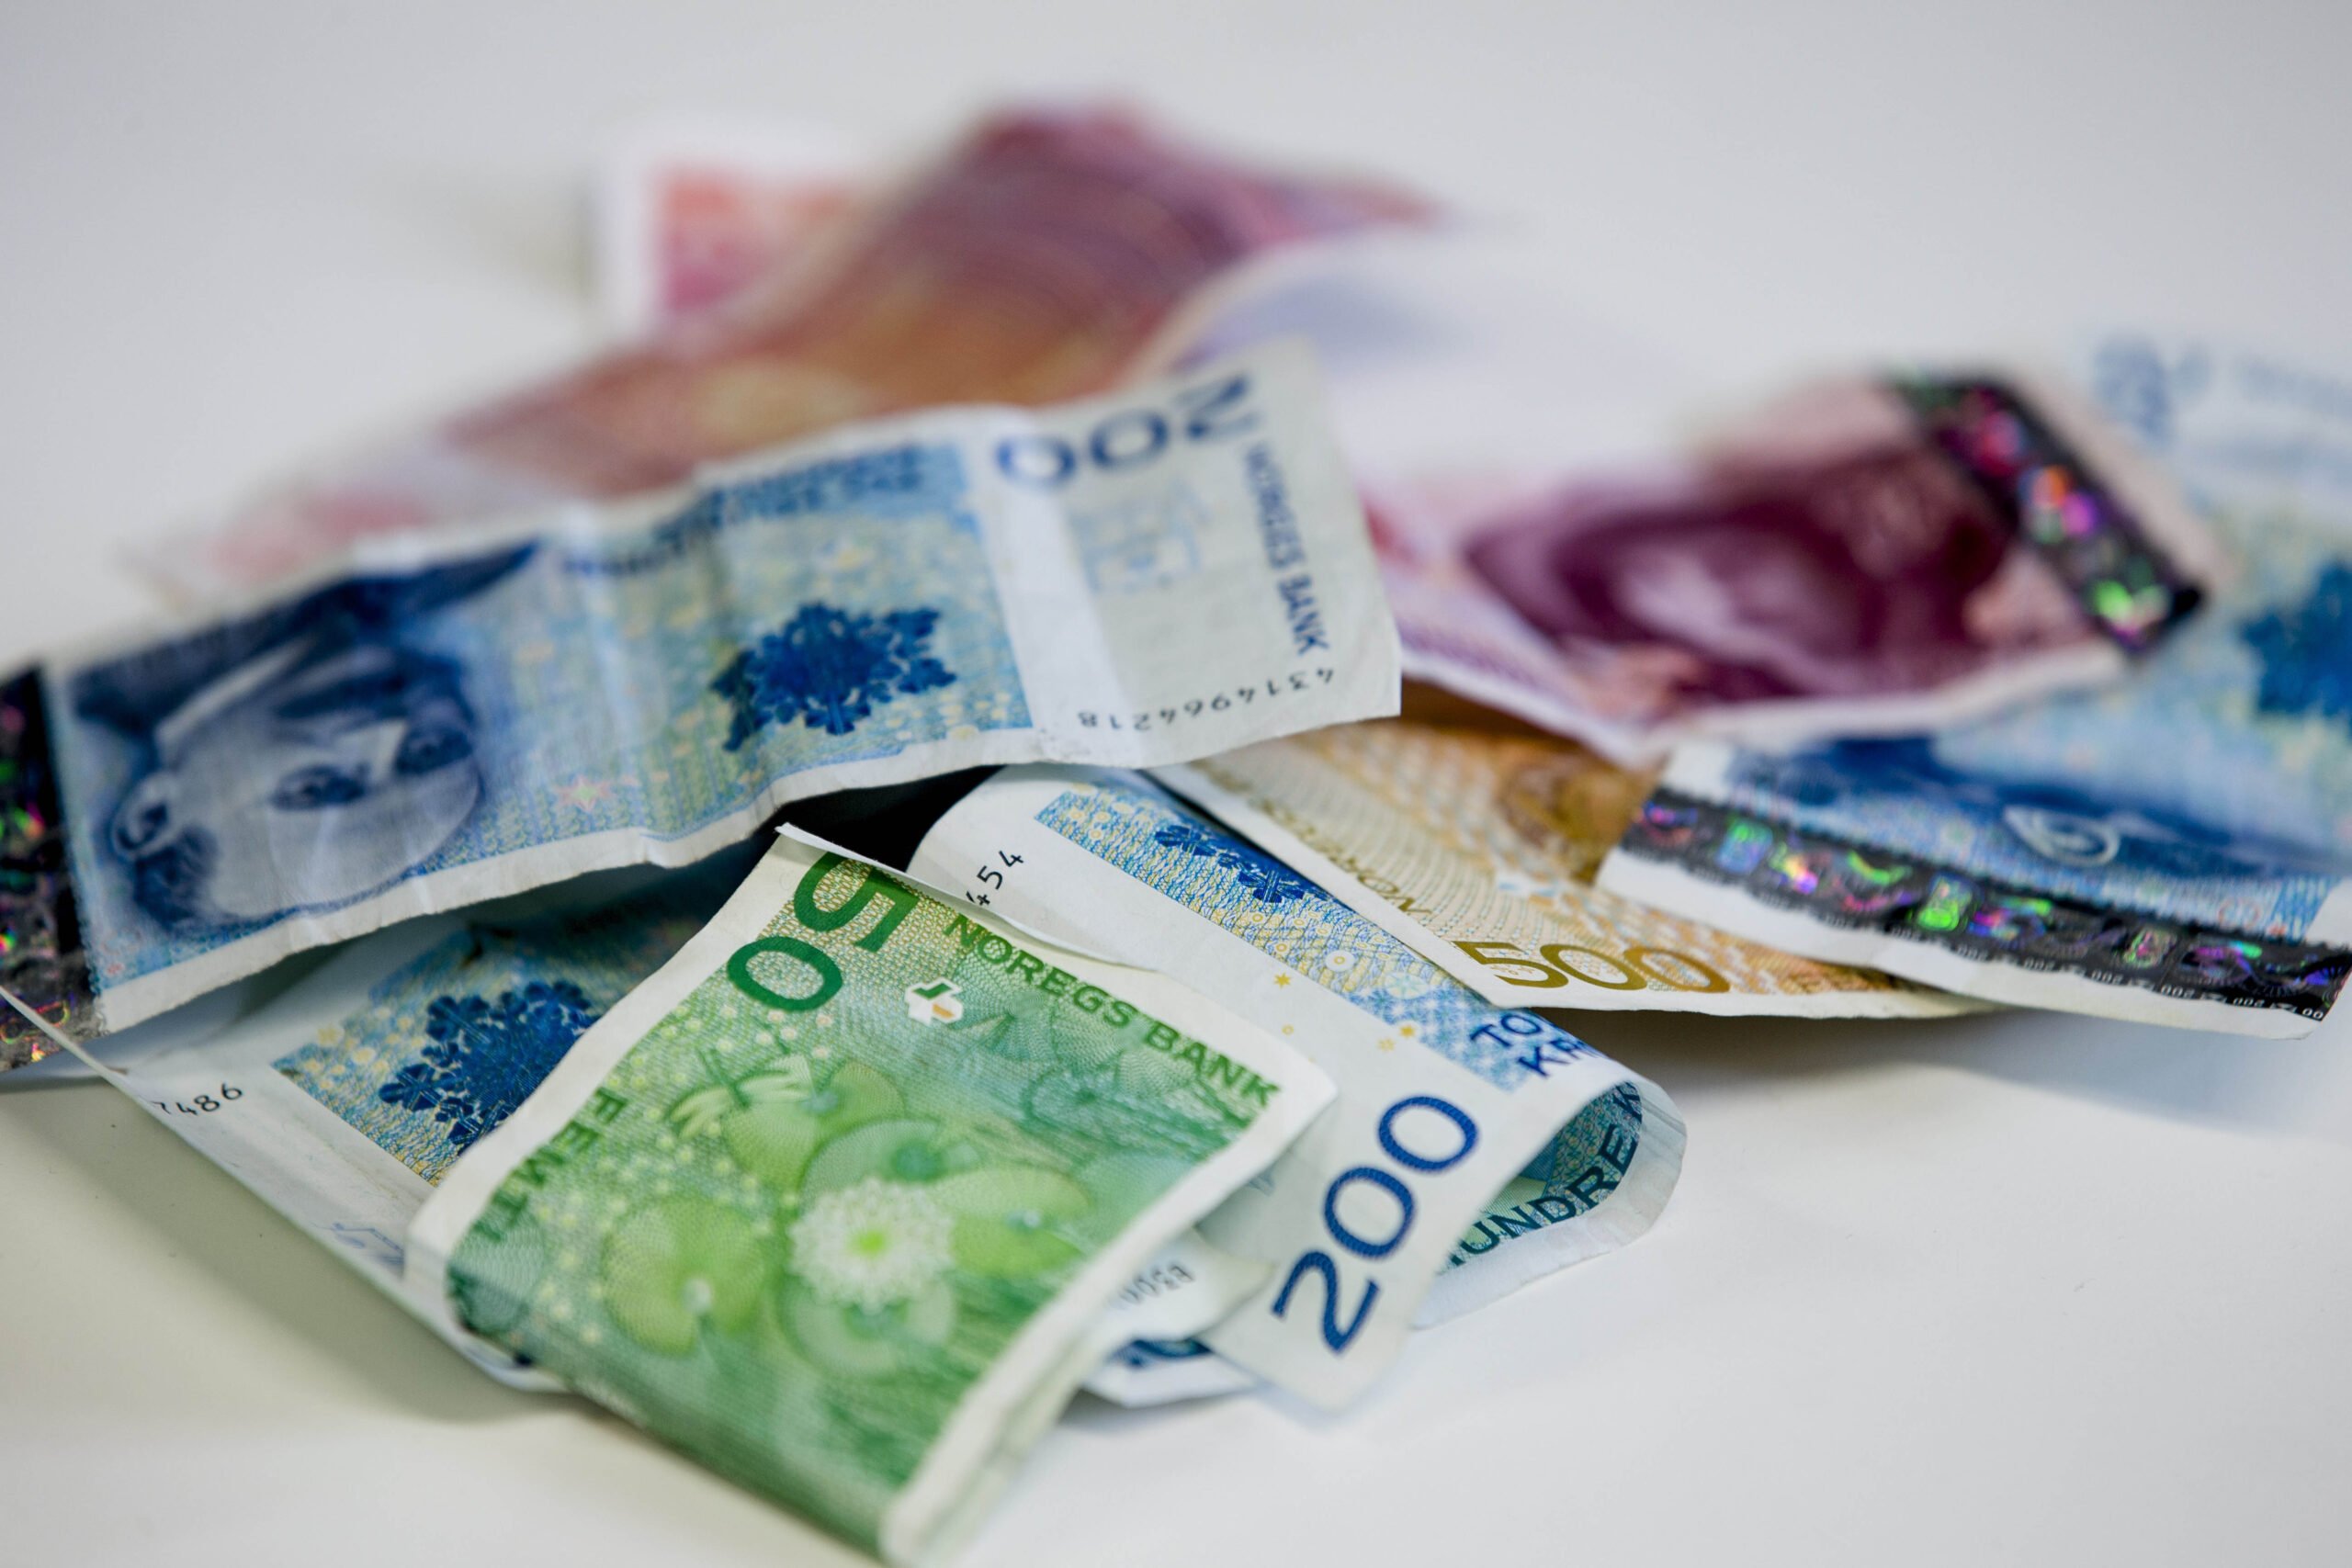 La croissance de la dette augmente - Norway Today - 3